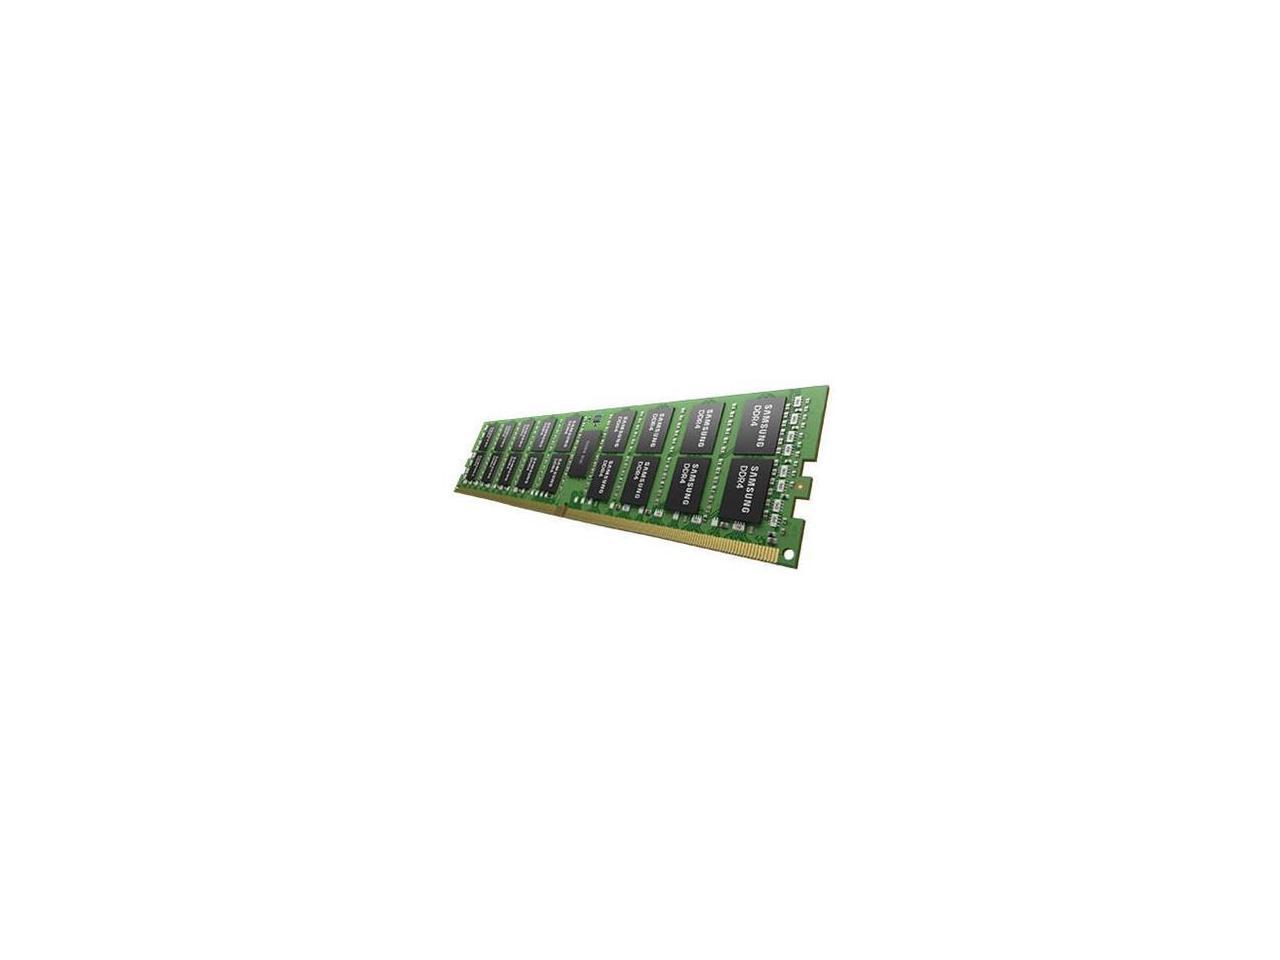 Samsung - M393A2K40CB2-CTD - Samsung 16GB DDR4 SDRAM Memory Module - 16 GB (1 x 16 GB) - DDR4-2666/PC4-21300 DDR4 SDRAM